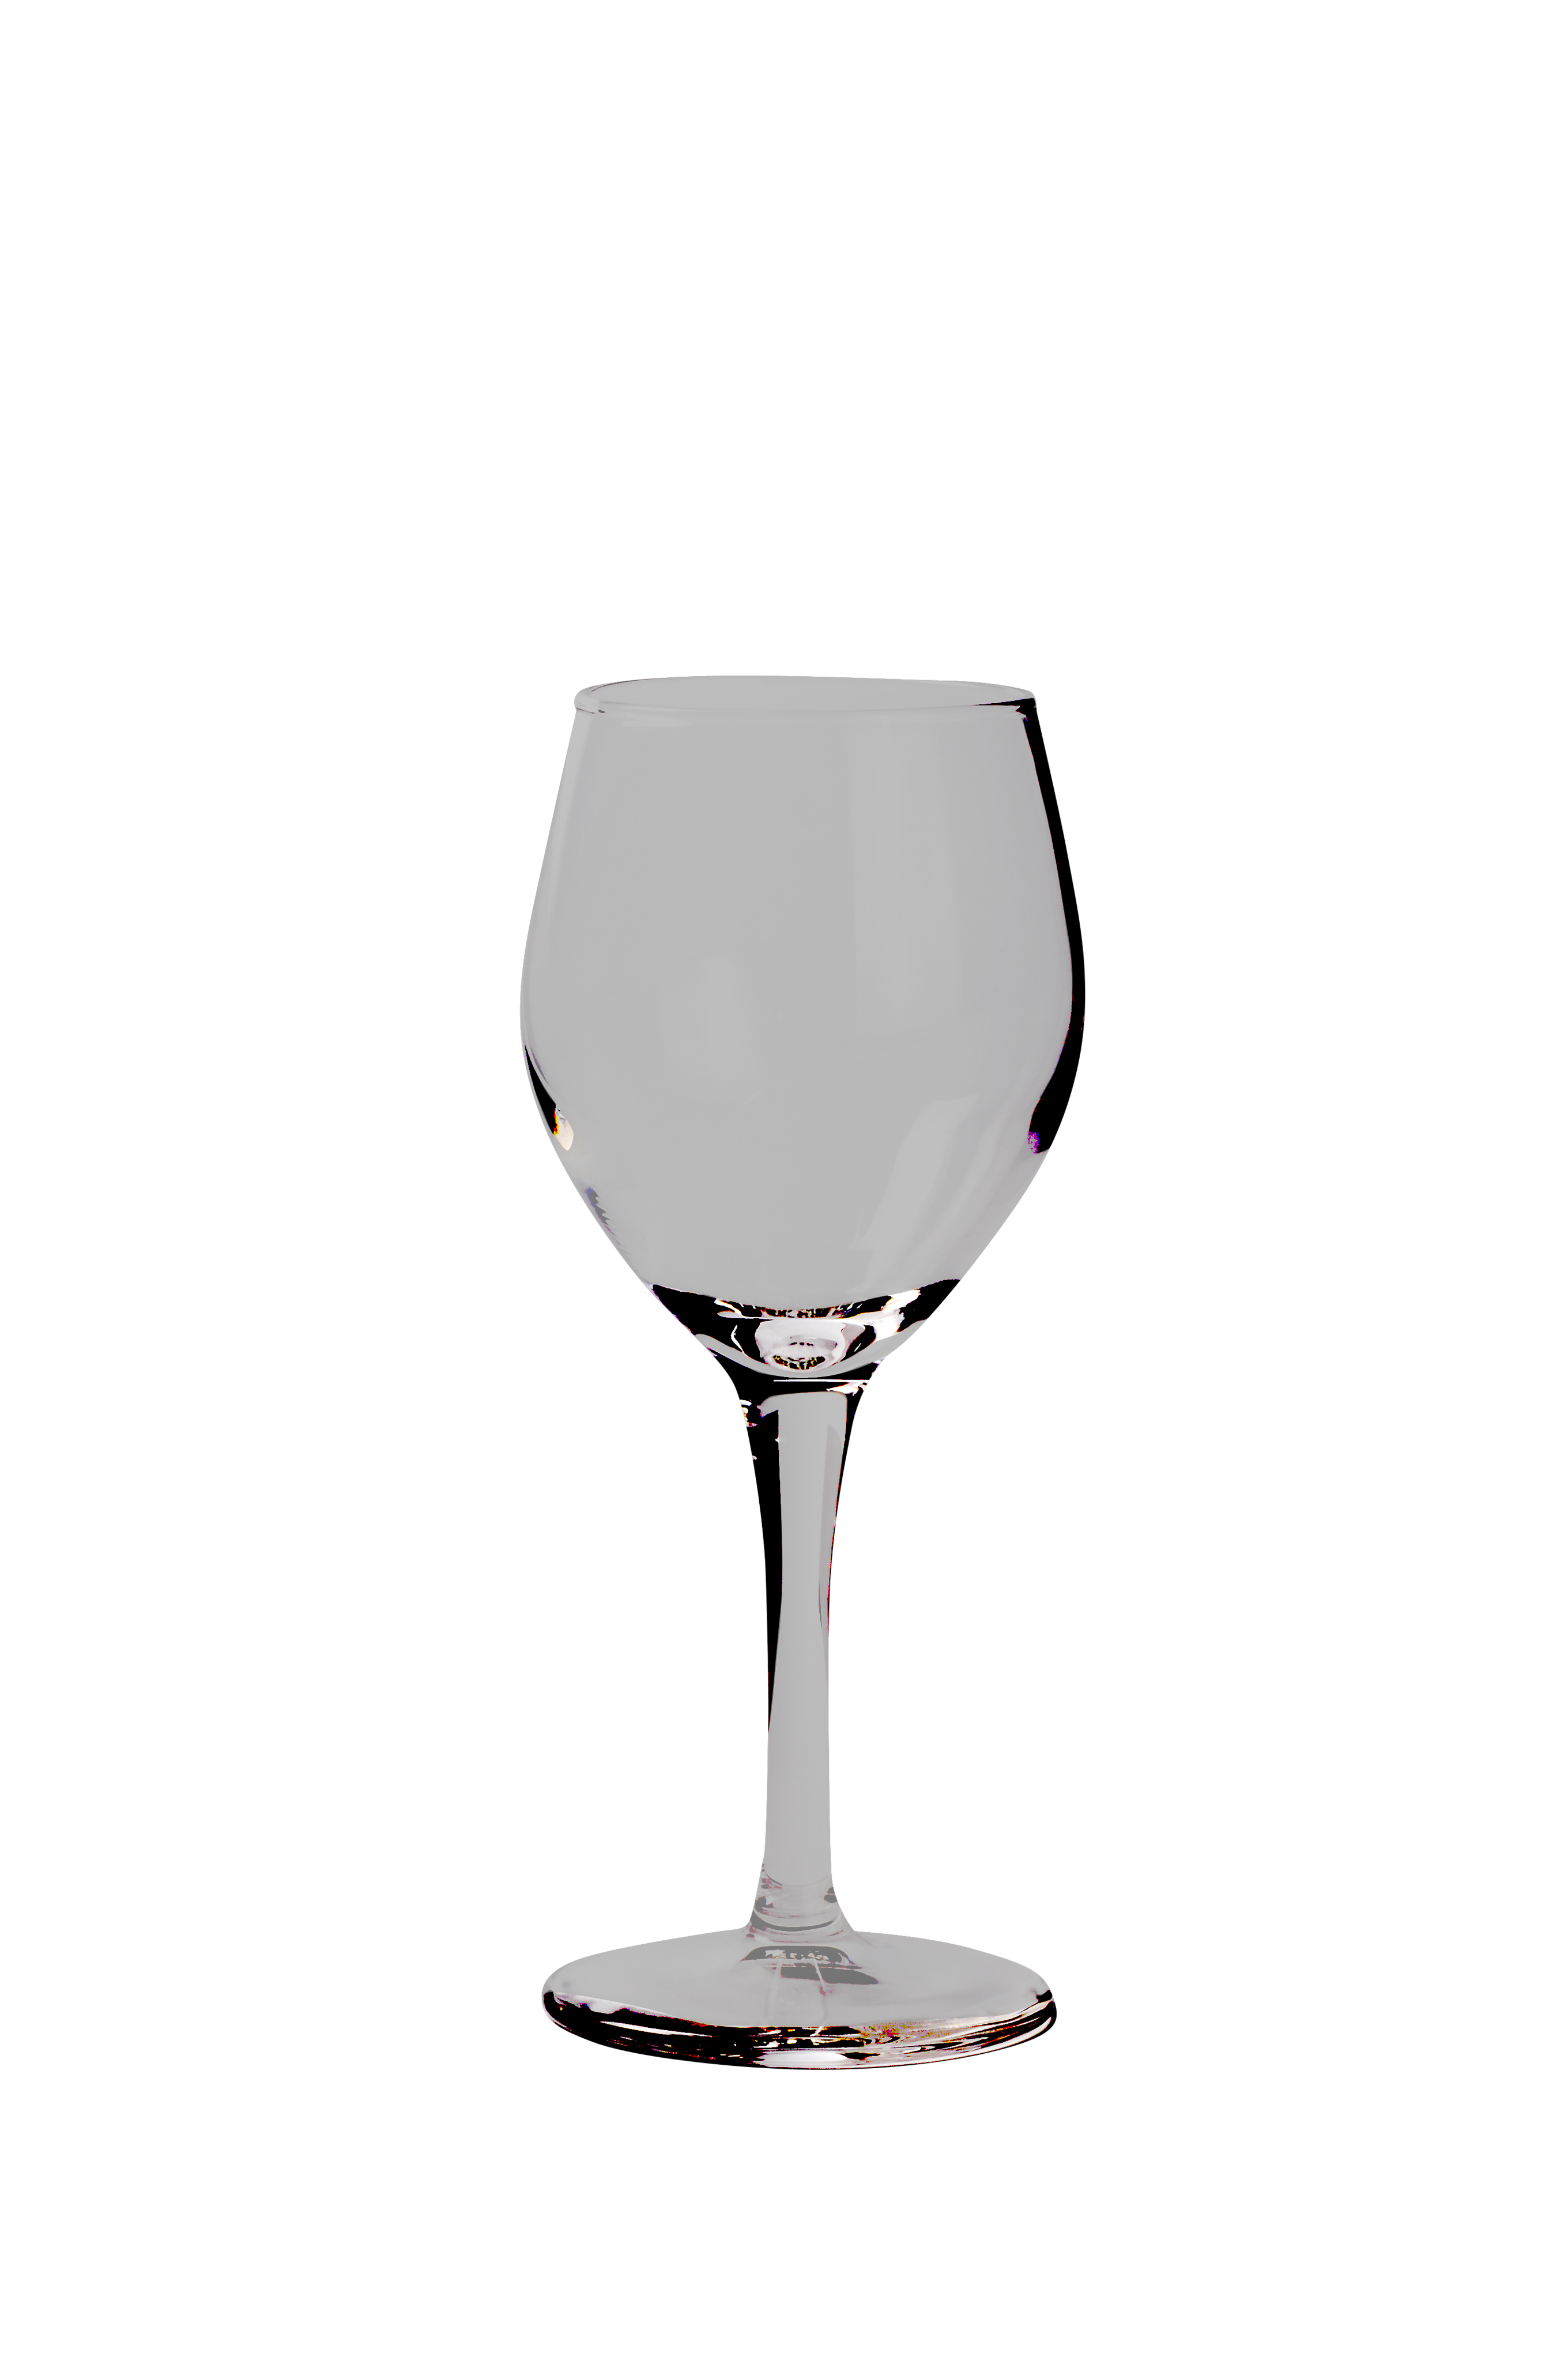 Juego de copas para vino – Spineto Hogar